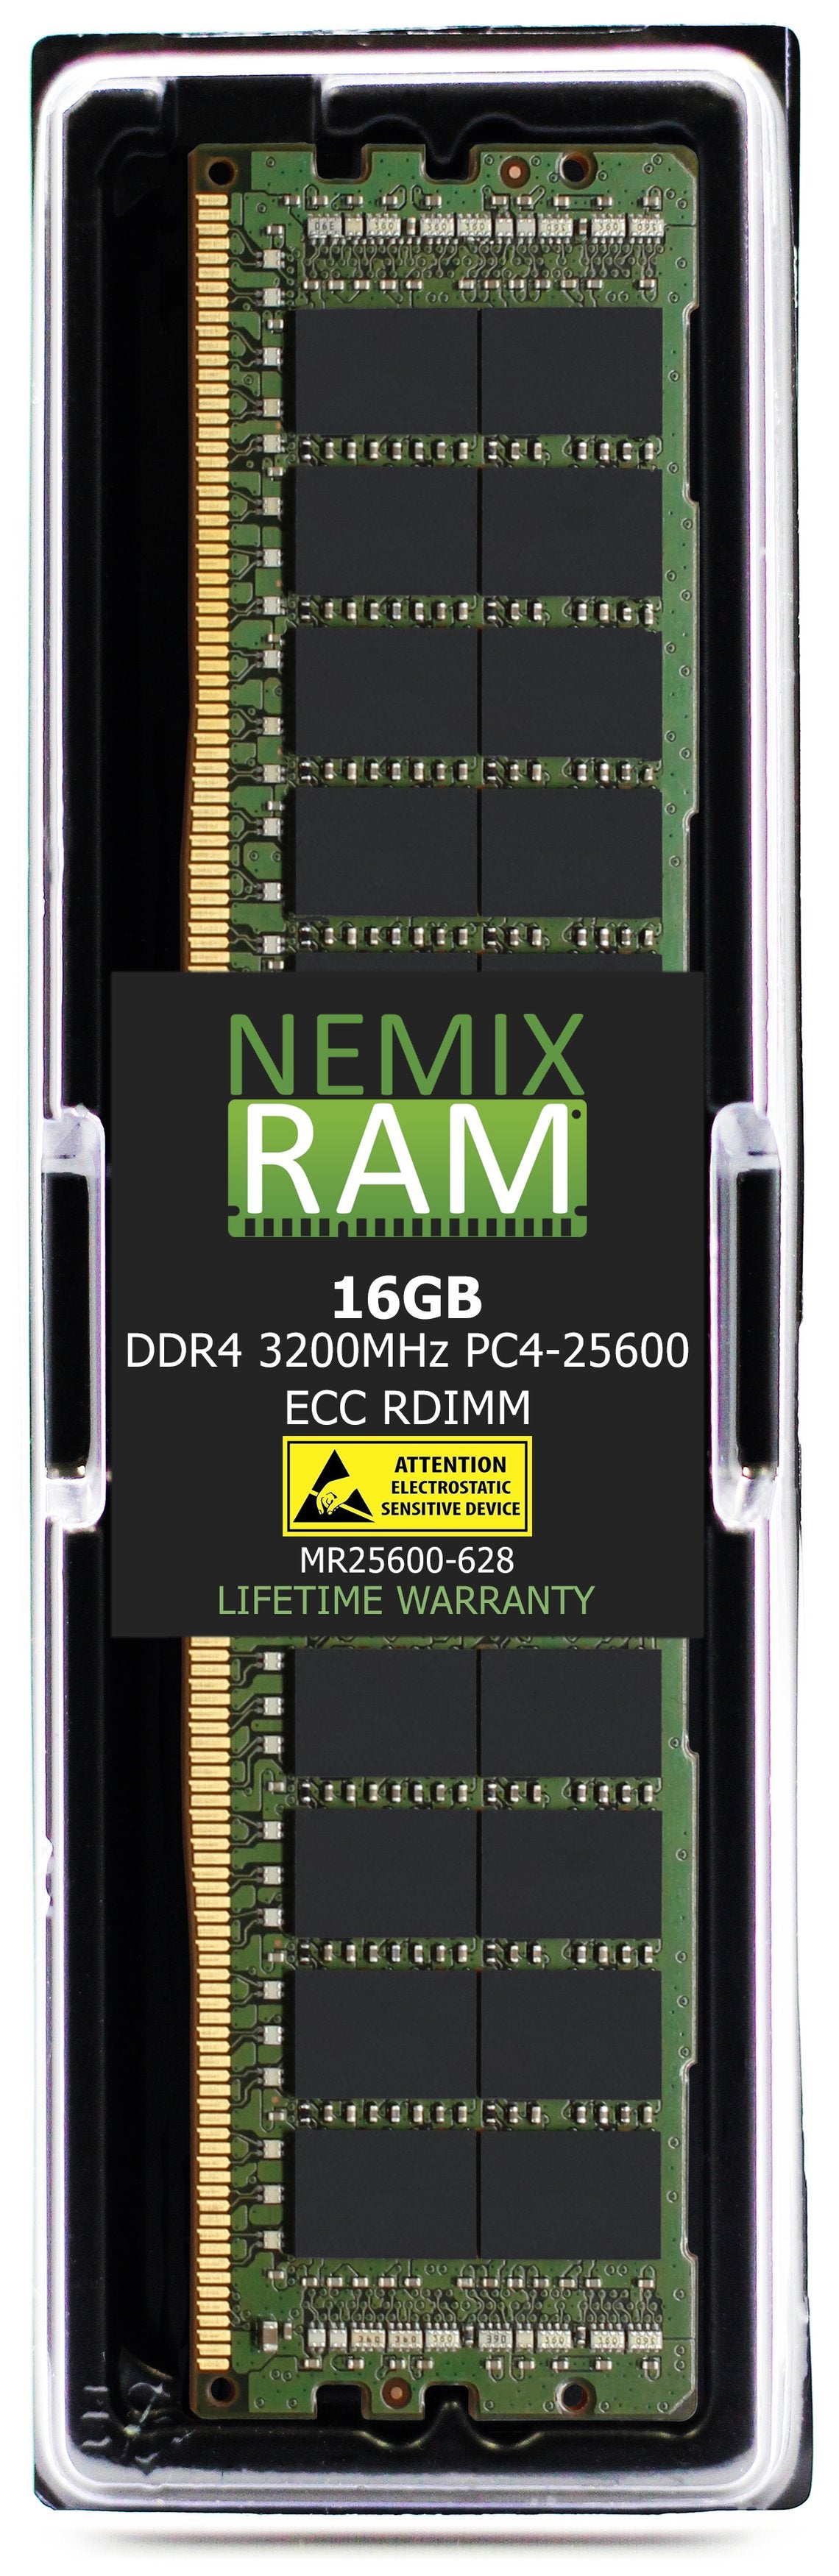 Hynix HMA82GR7DJR8N-XN 16GB DDR4 3200MHZ PC4-25600 RDIMM Compatible Memory Module